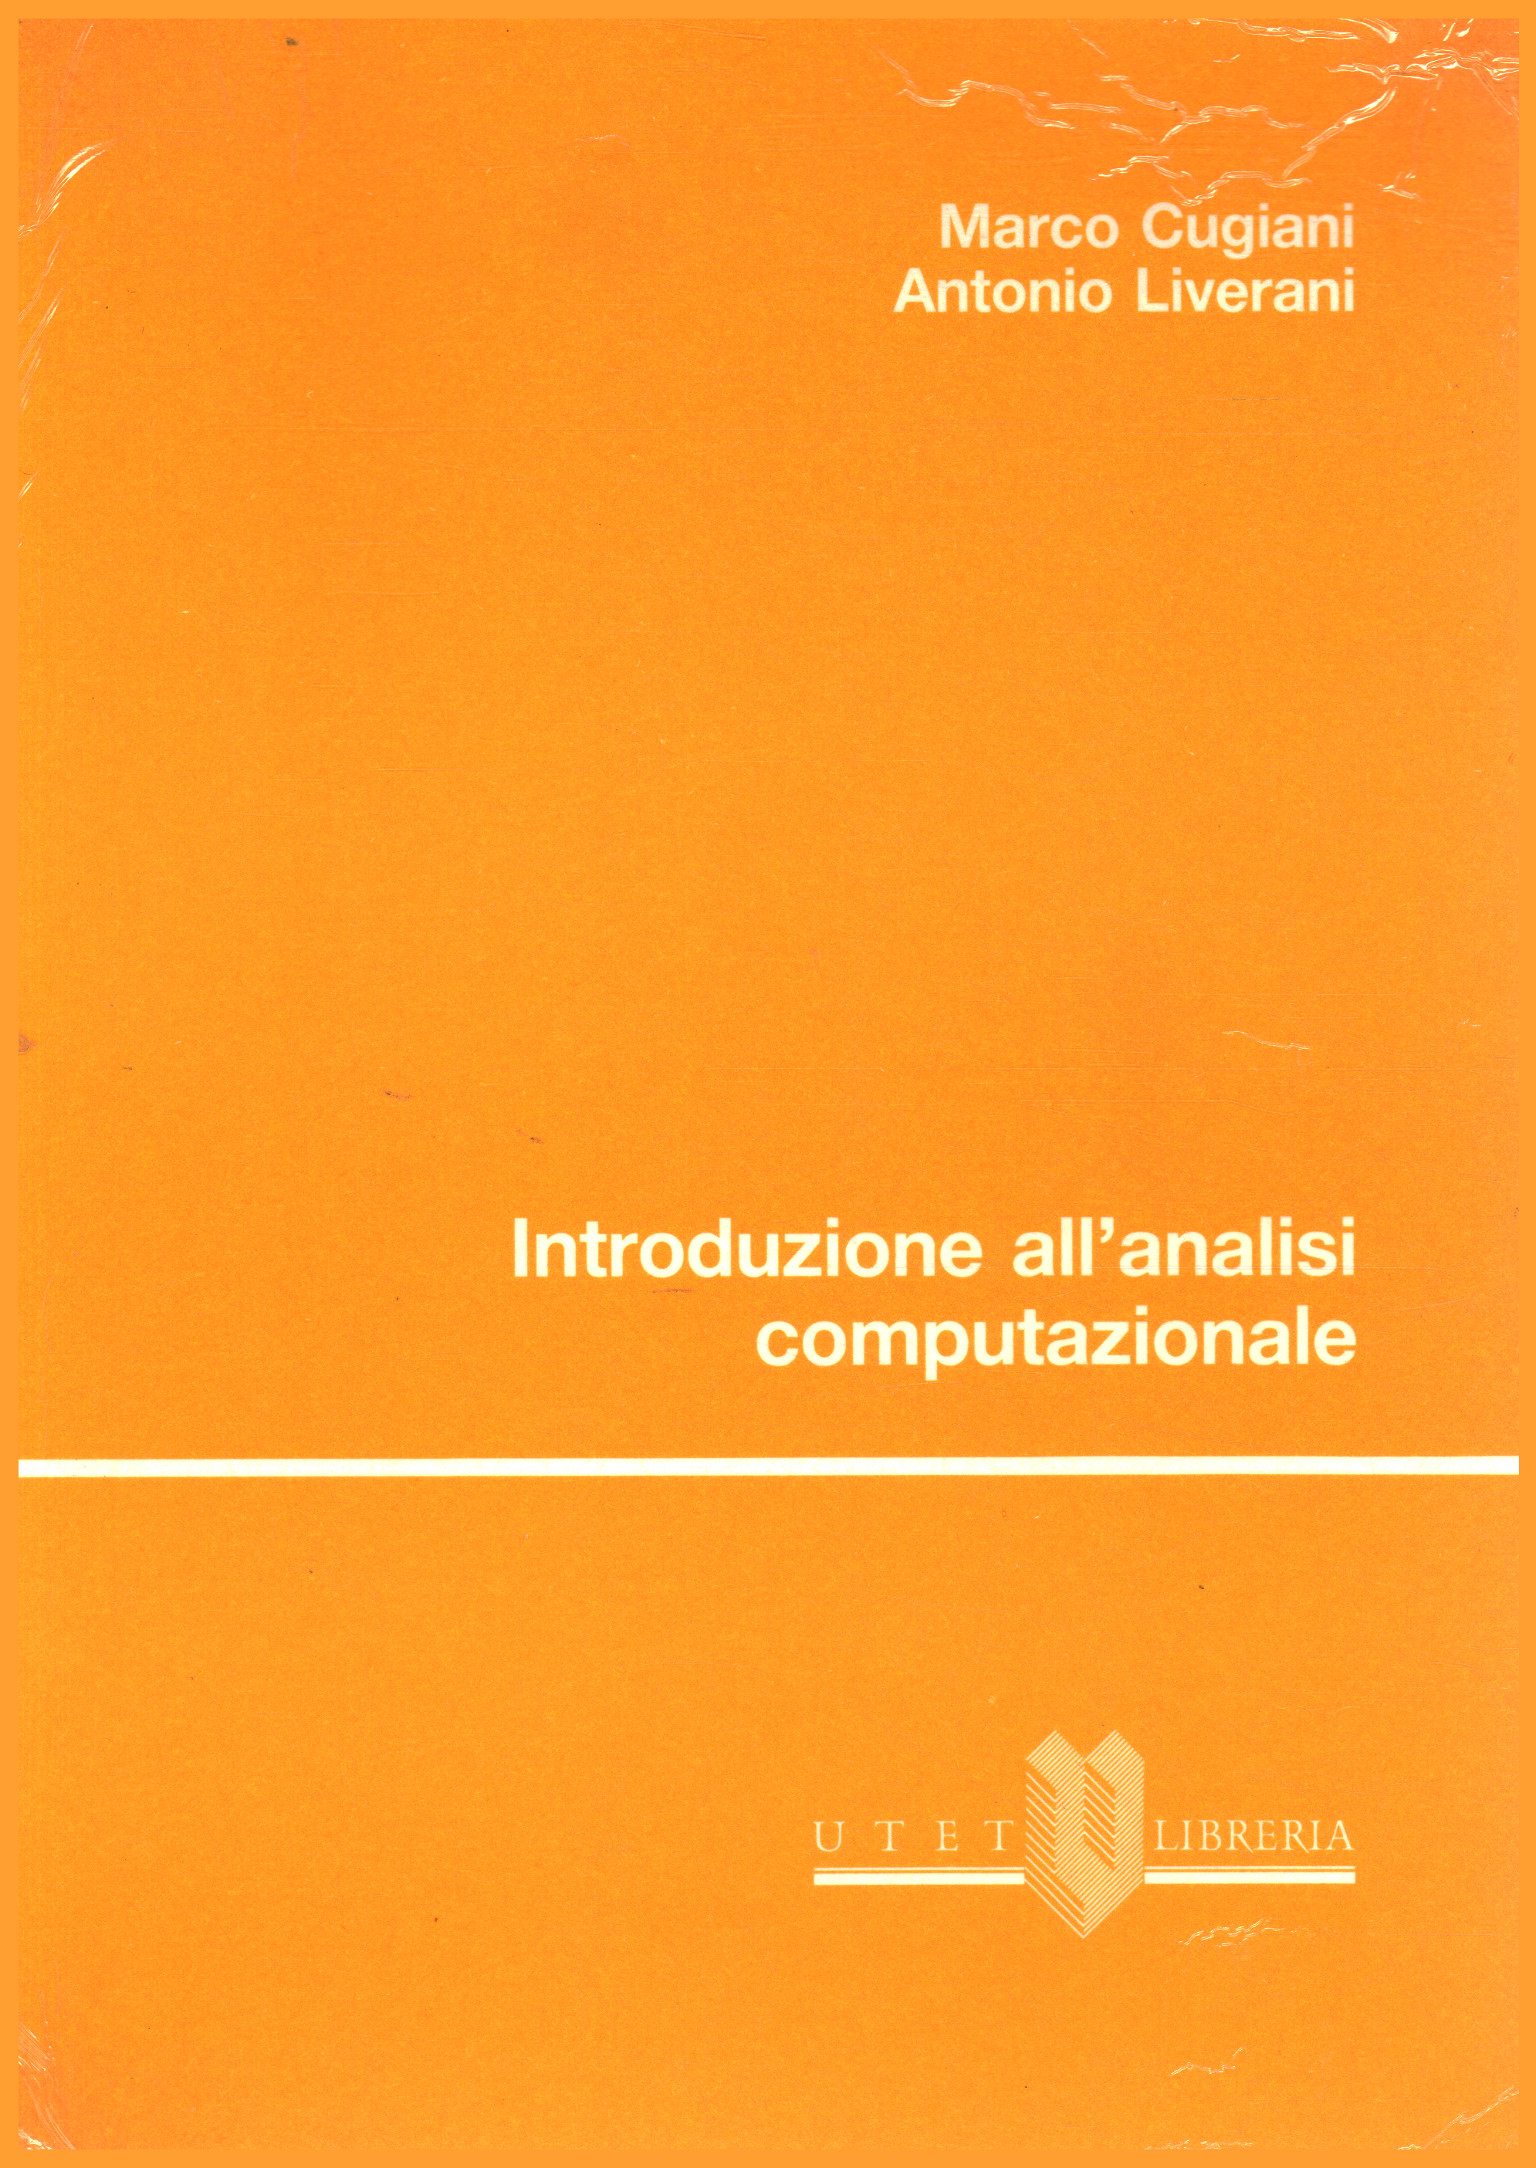 Introduzione all analisi computazionale, Marco Cugiani Antonio Liverani